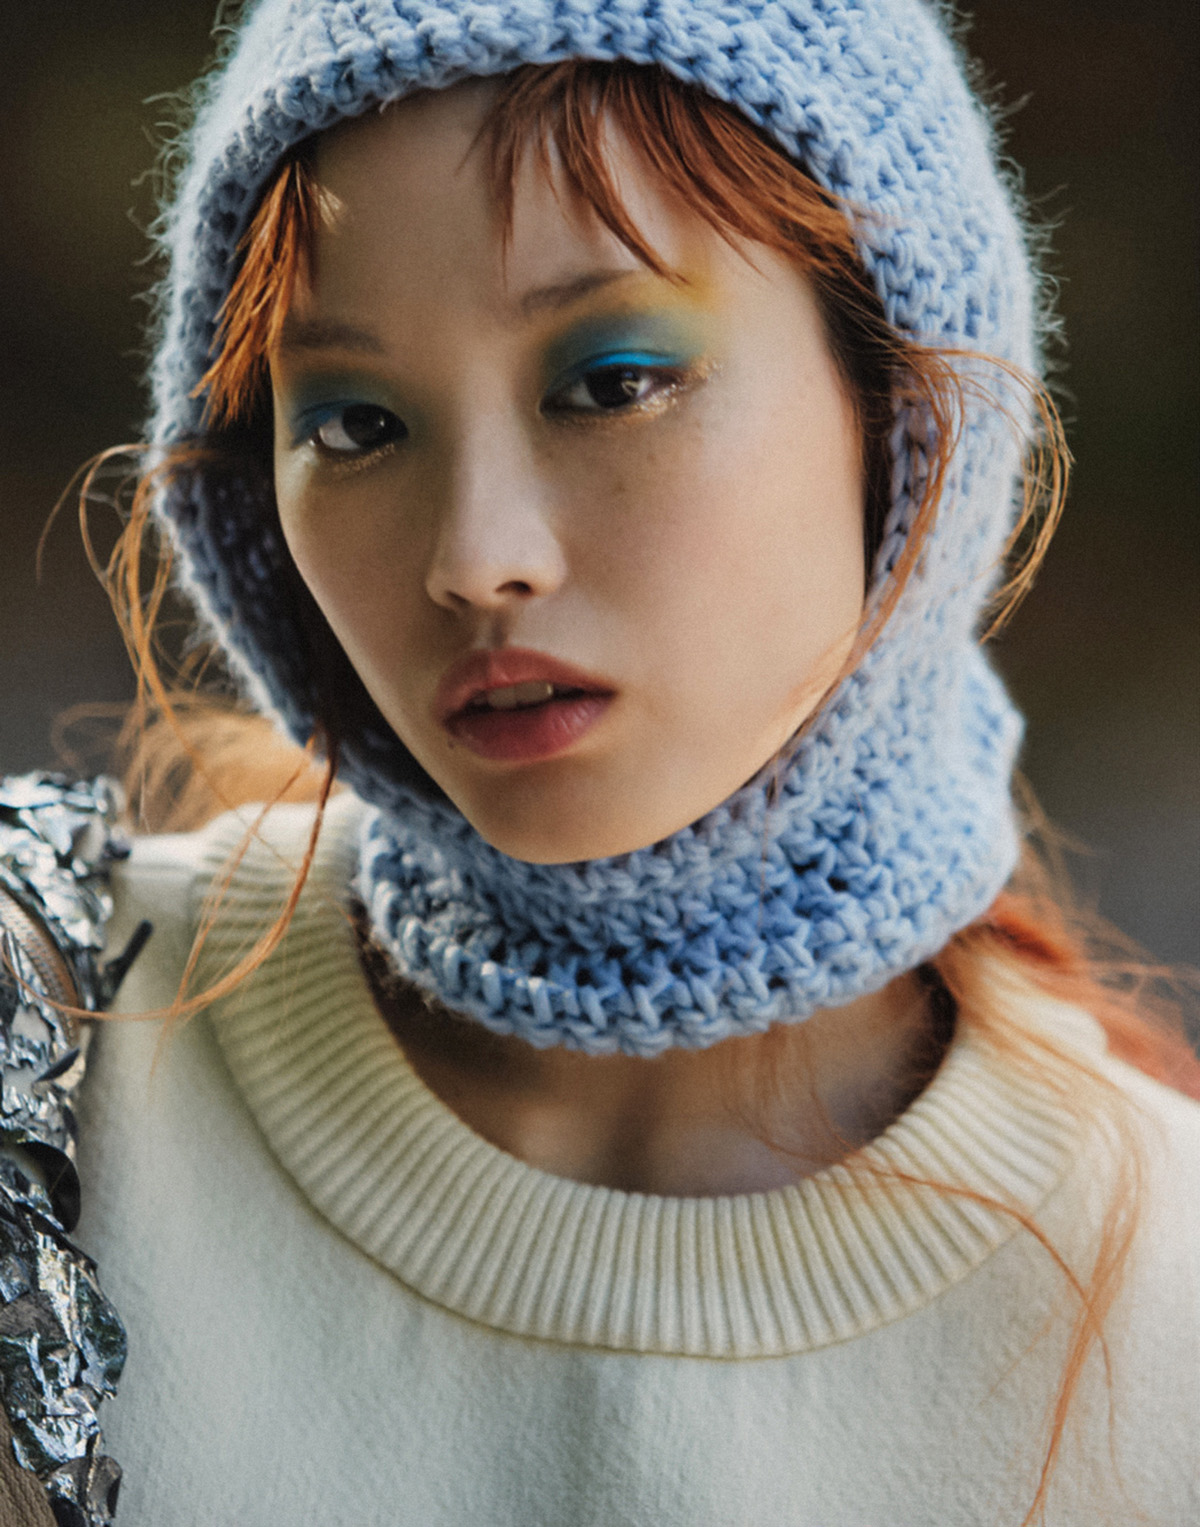 Fernanda Ly by Drew Jarrett for Vogue Singapore September 2021